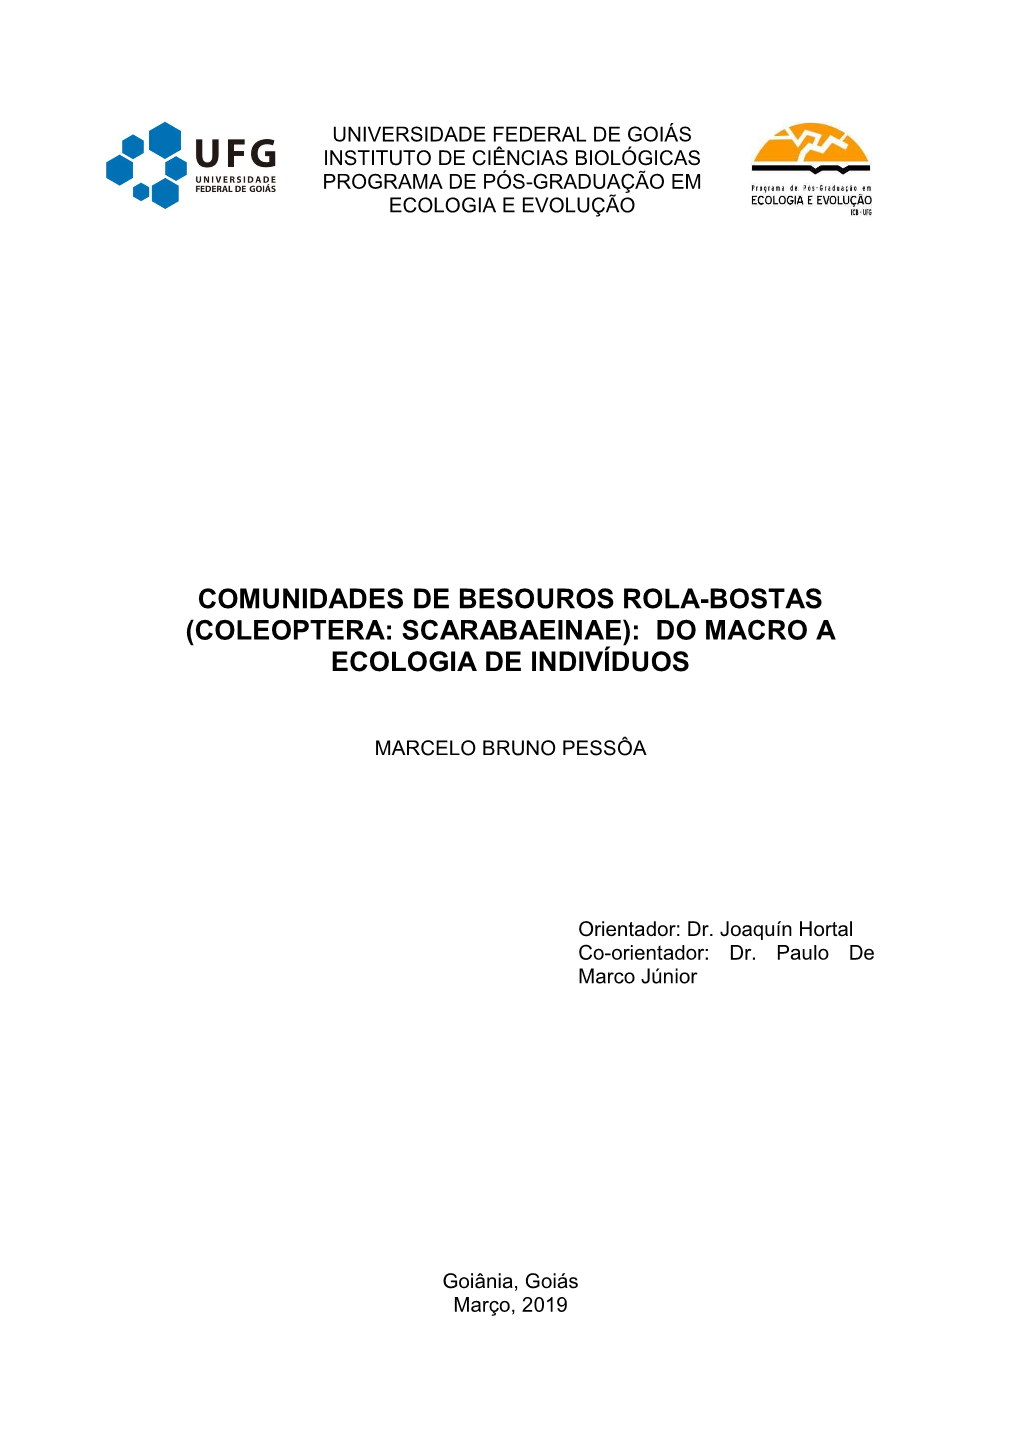 Comunidades De Besouros Rola-Bostas (Coleoptera: Scarabaeinae): Do Macro a Ecologia De Indivíduos